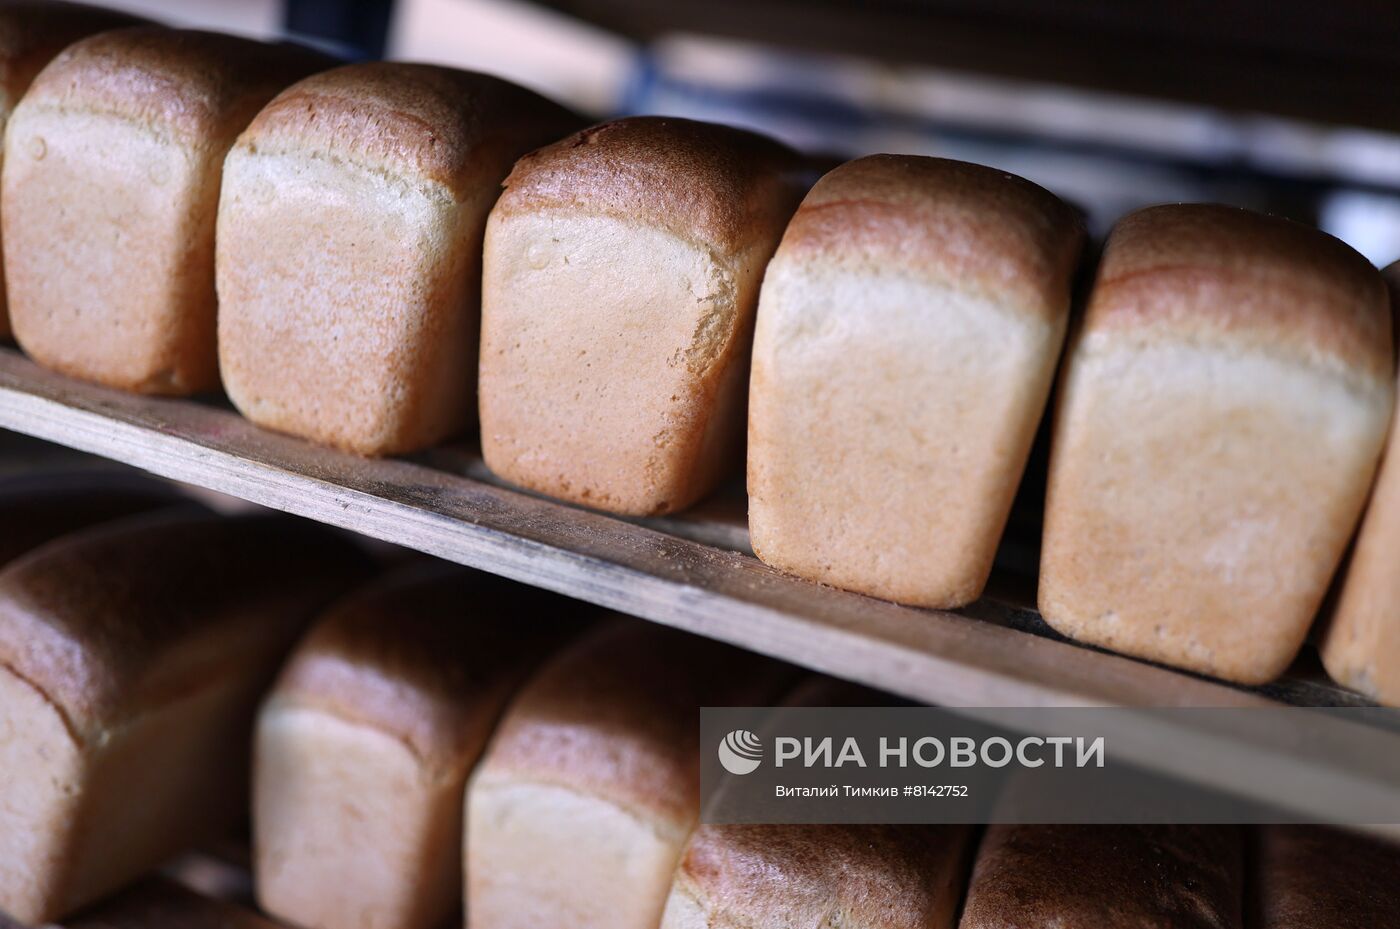 Работа Ахтырского хлебозавода в Краснодарском крае